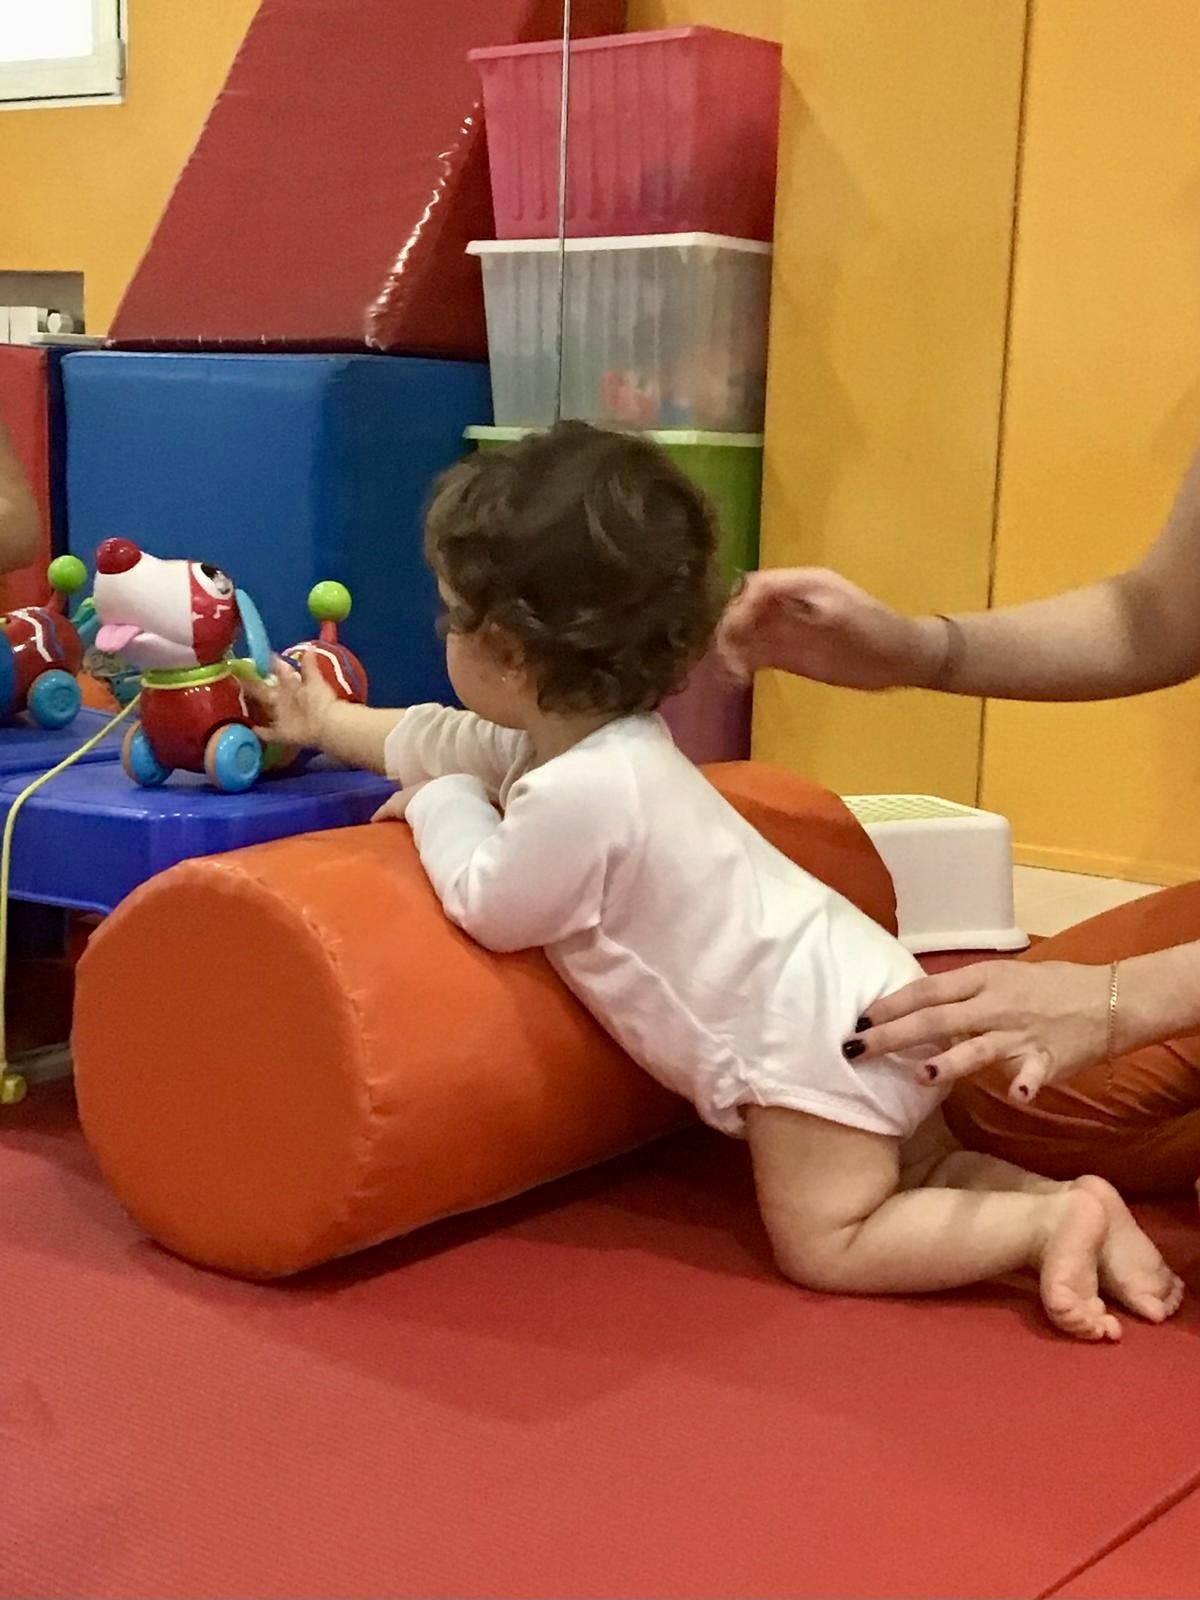 Niño pequeño en camiseta blanca jugando con un juguete sobre un rollo de espuma naranja, con la mano de un adulto en su espalda.